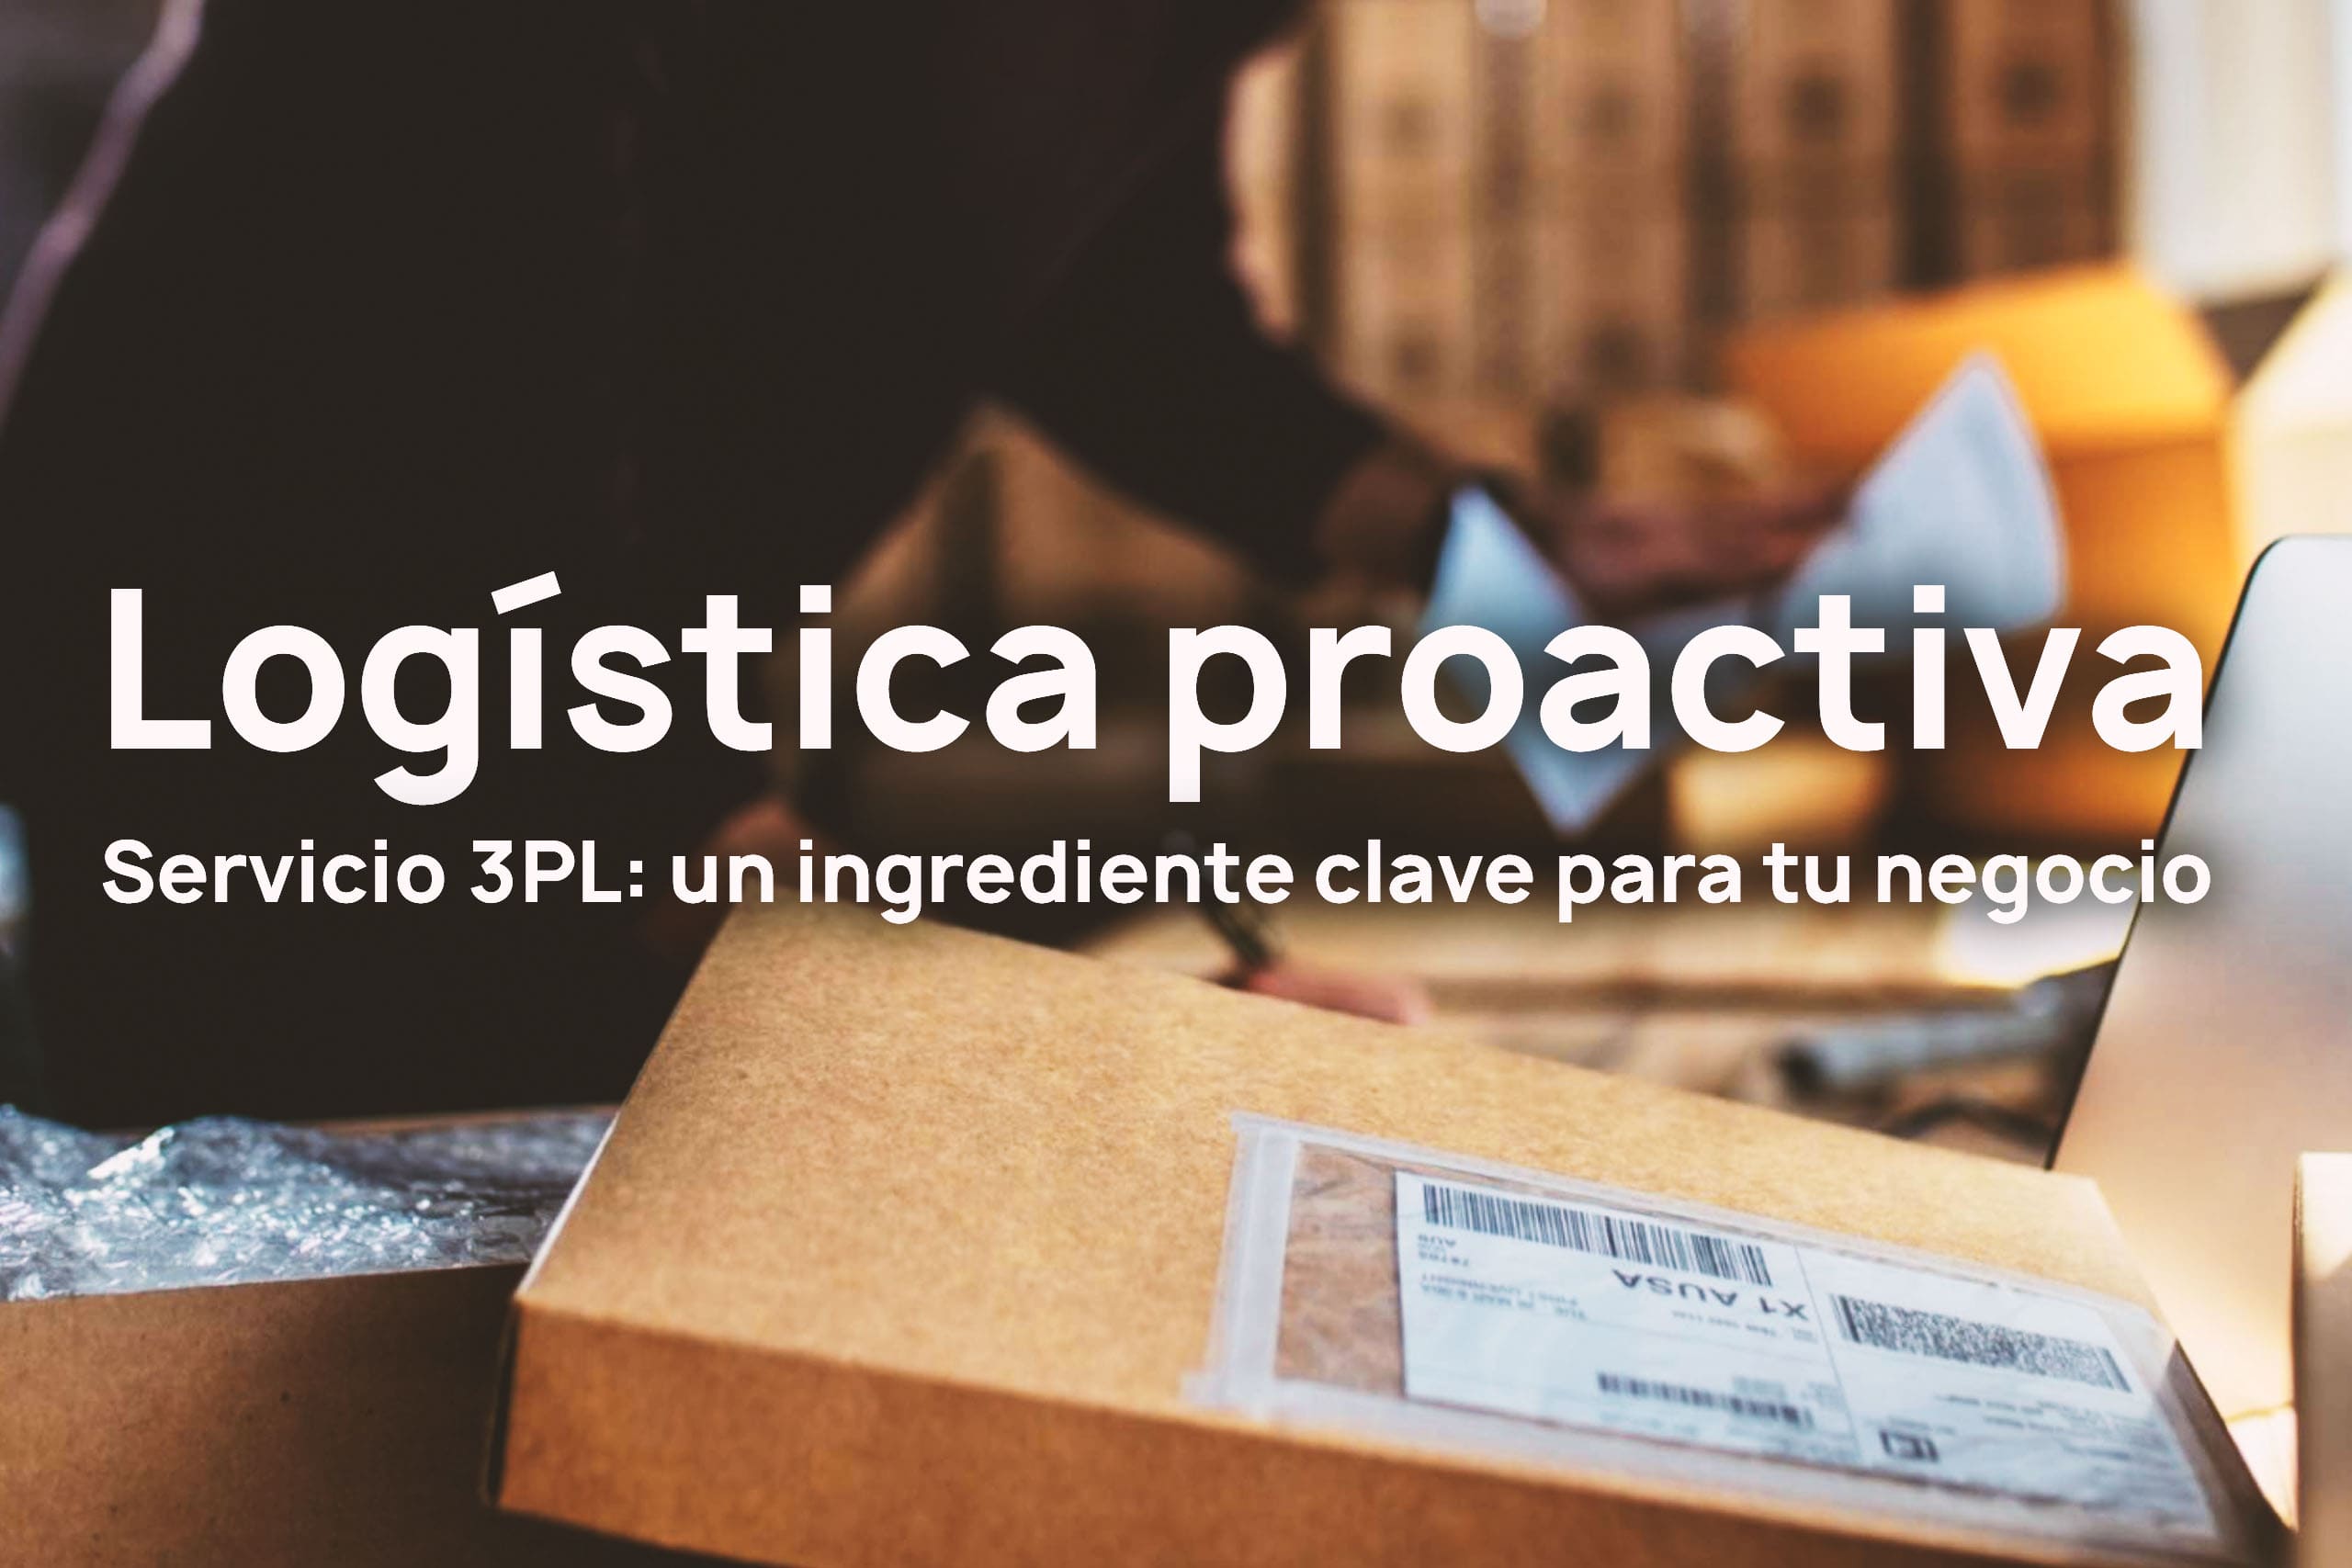 Servicios 3PL para una logística proactiva 